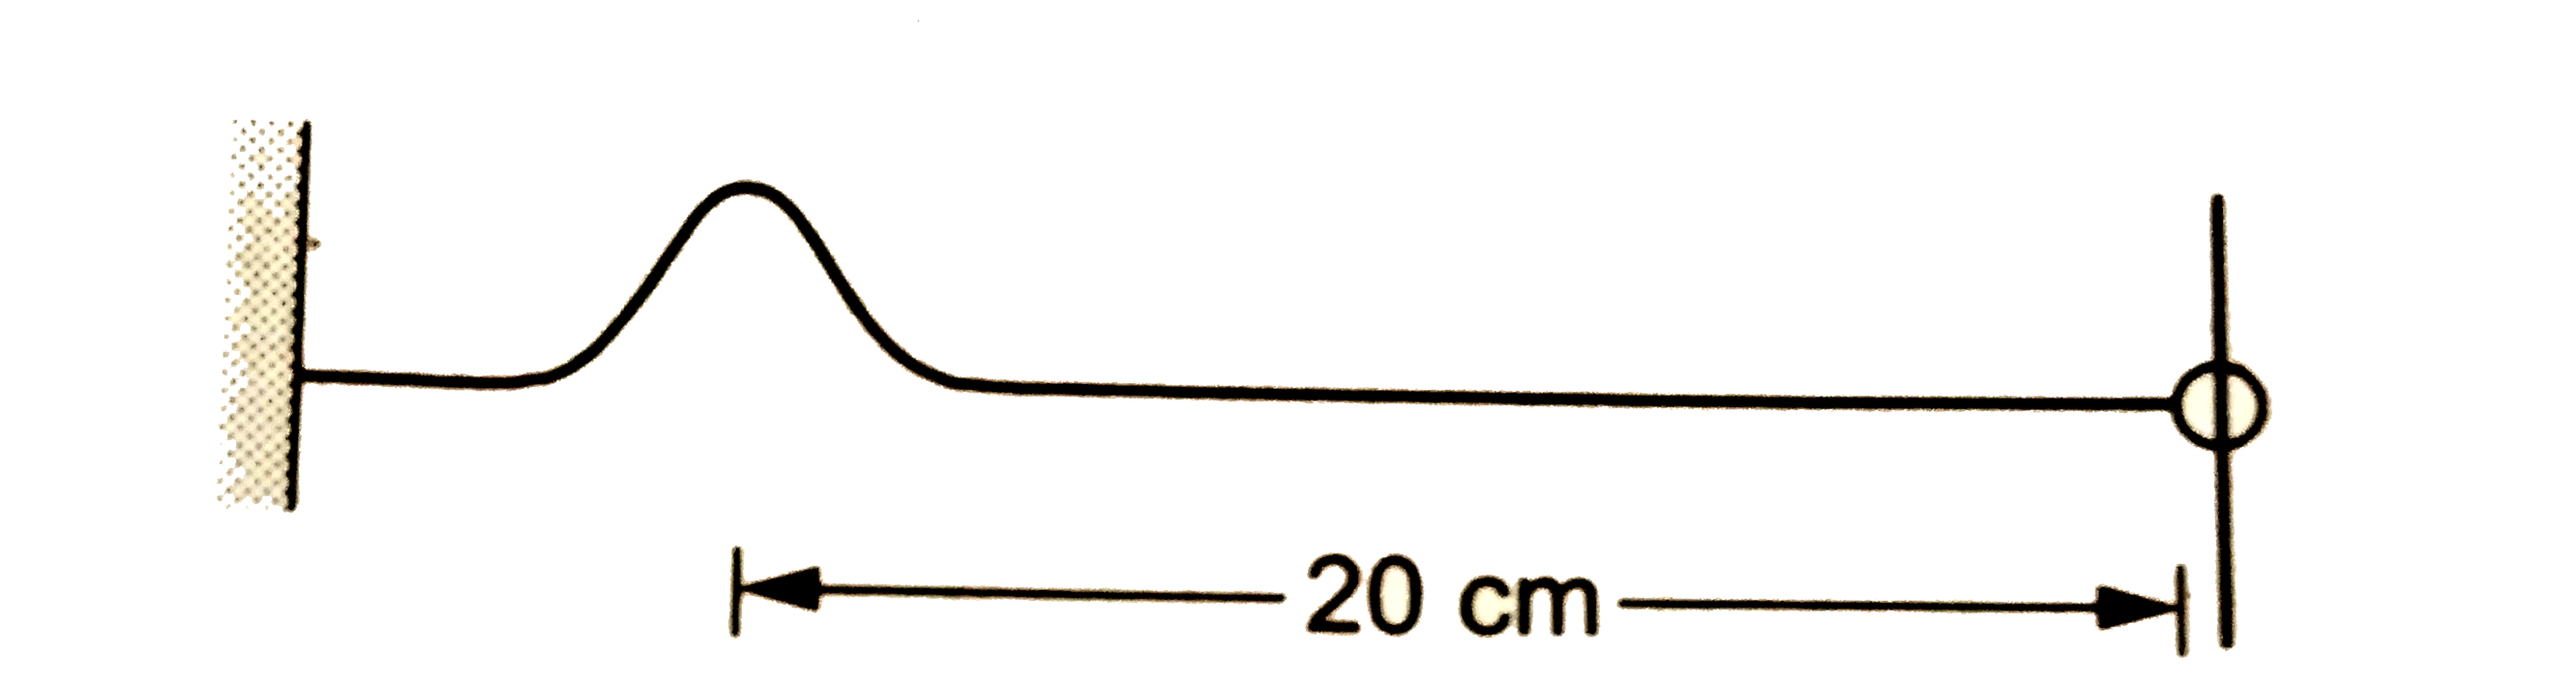 रेखीय द्रव्यमान घनत्व 0.5 g//cm वाली 30cm लंबी एक डोरी का एक सिरा एक दीवार से बंधा है और दूसरे सिरे पर एक घर्षणरहित रिंग लगी है । यह रिंग एक शीटर चढ़ में पहनाई हुई है । इस डोरी पर एक तरंगिका उत्पन्न की जाती है जो रिंग की ओर 2 cm//s की चाल से चलती है । तरंगिका अपने अधिकतम विस्थापन वाले बिंदु के दोनों की ओर एक-जैसी (symmetric )  है । प्रारम्भ में यह बिंदु रिंग से 20 cm दूरी पर है । (a)डोरी का तनाव निकालें । (b) किसी प्रकार के ऊर्जा अवशोषण को नगण्य मानते हुए यह बताएँ कि कितने समय बाद तरंगिका पुनः चित्र में दिखाई शक्ल को पा लेगी । (c ) तरंगिका की डोरी पर गति आवृत्ति है । इस गति का आवर्तकाल निकालें ।